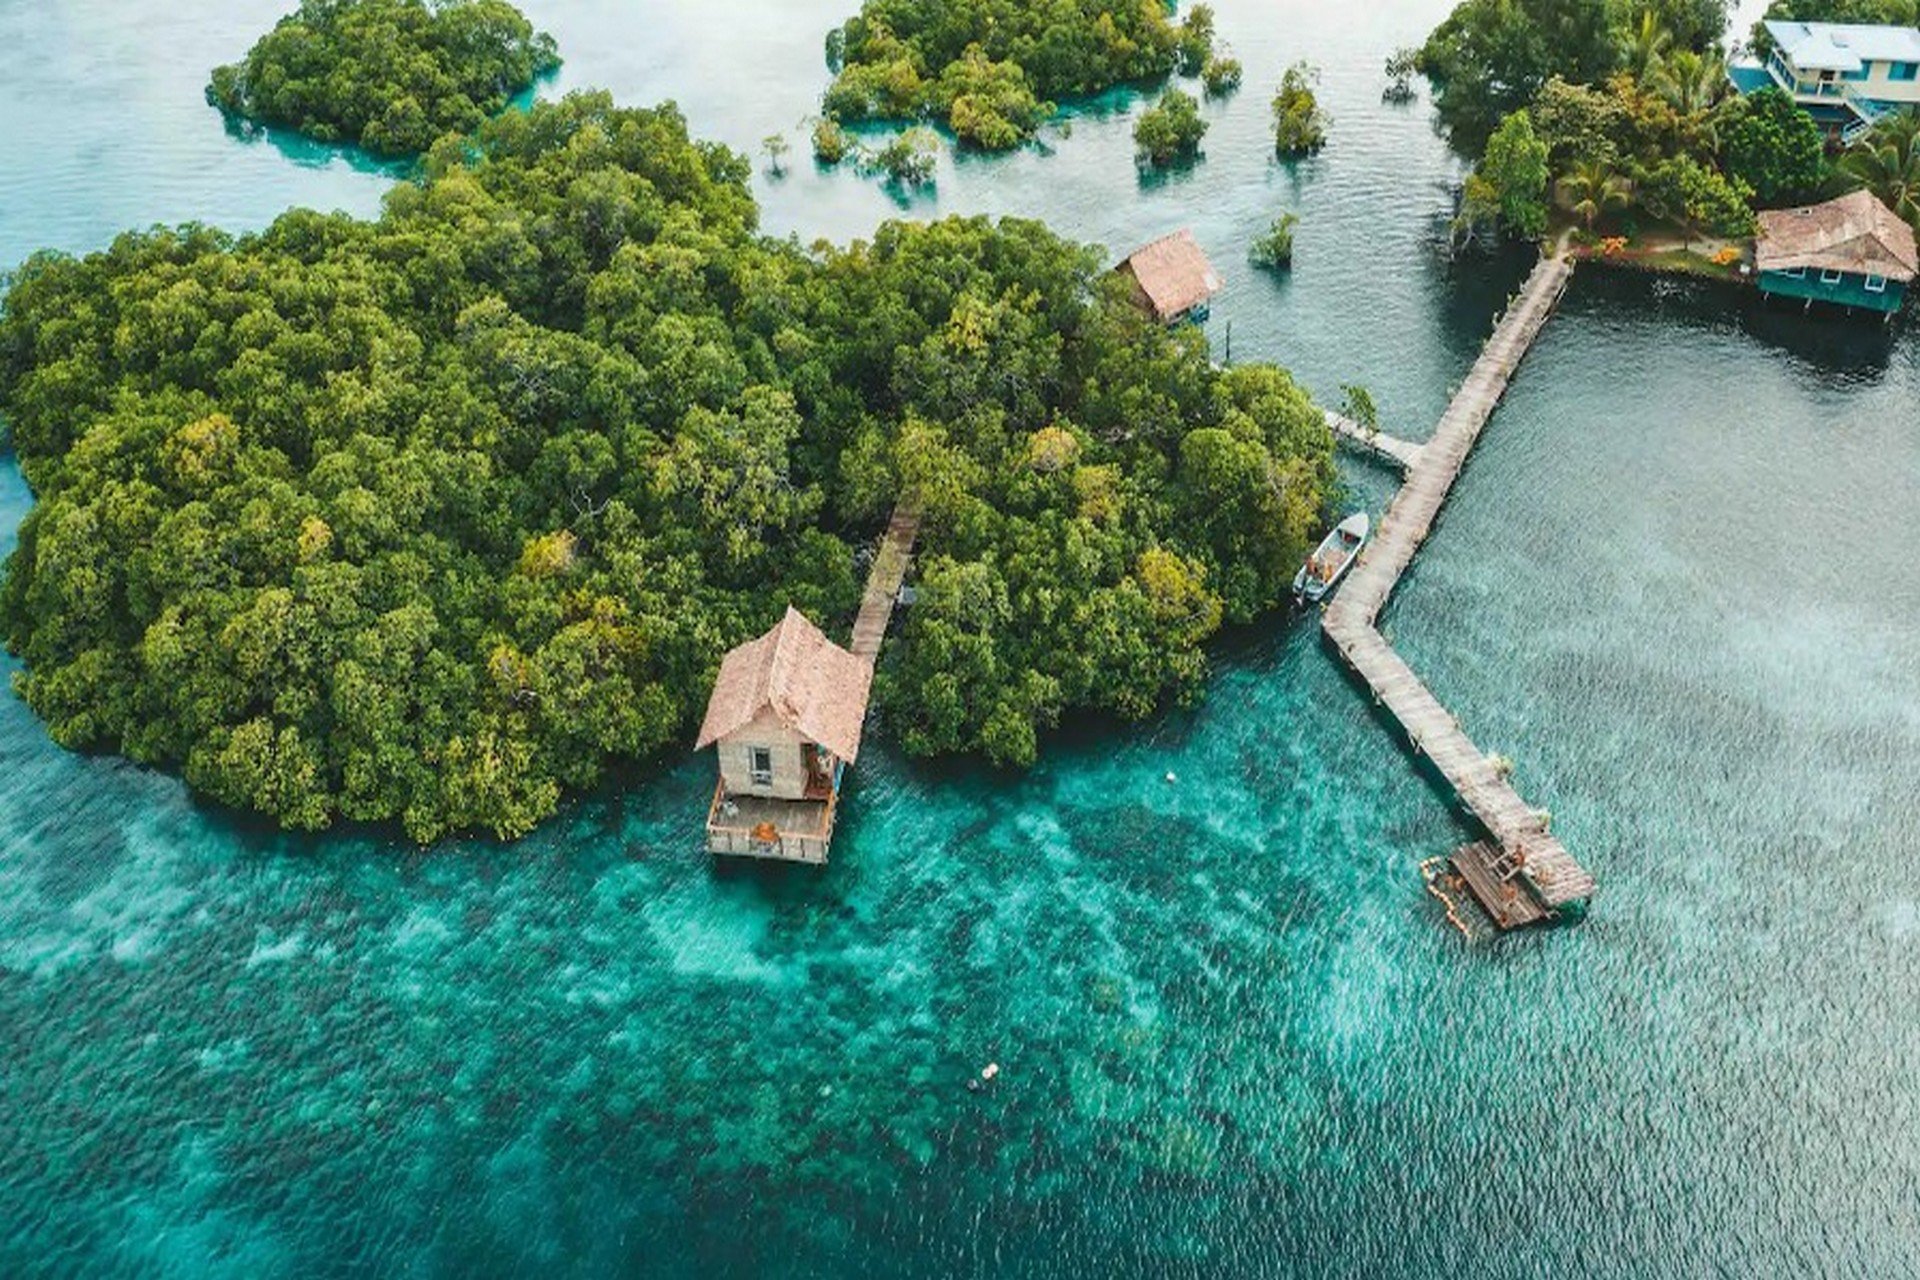 Prywatne wyspy do wynajęcia czekają na Wyspach Salomona